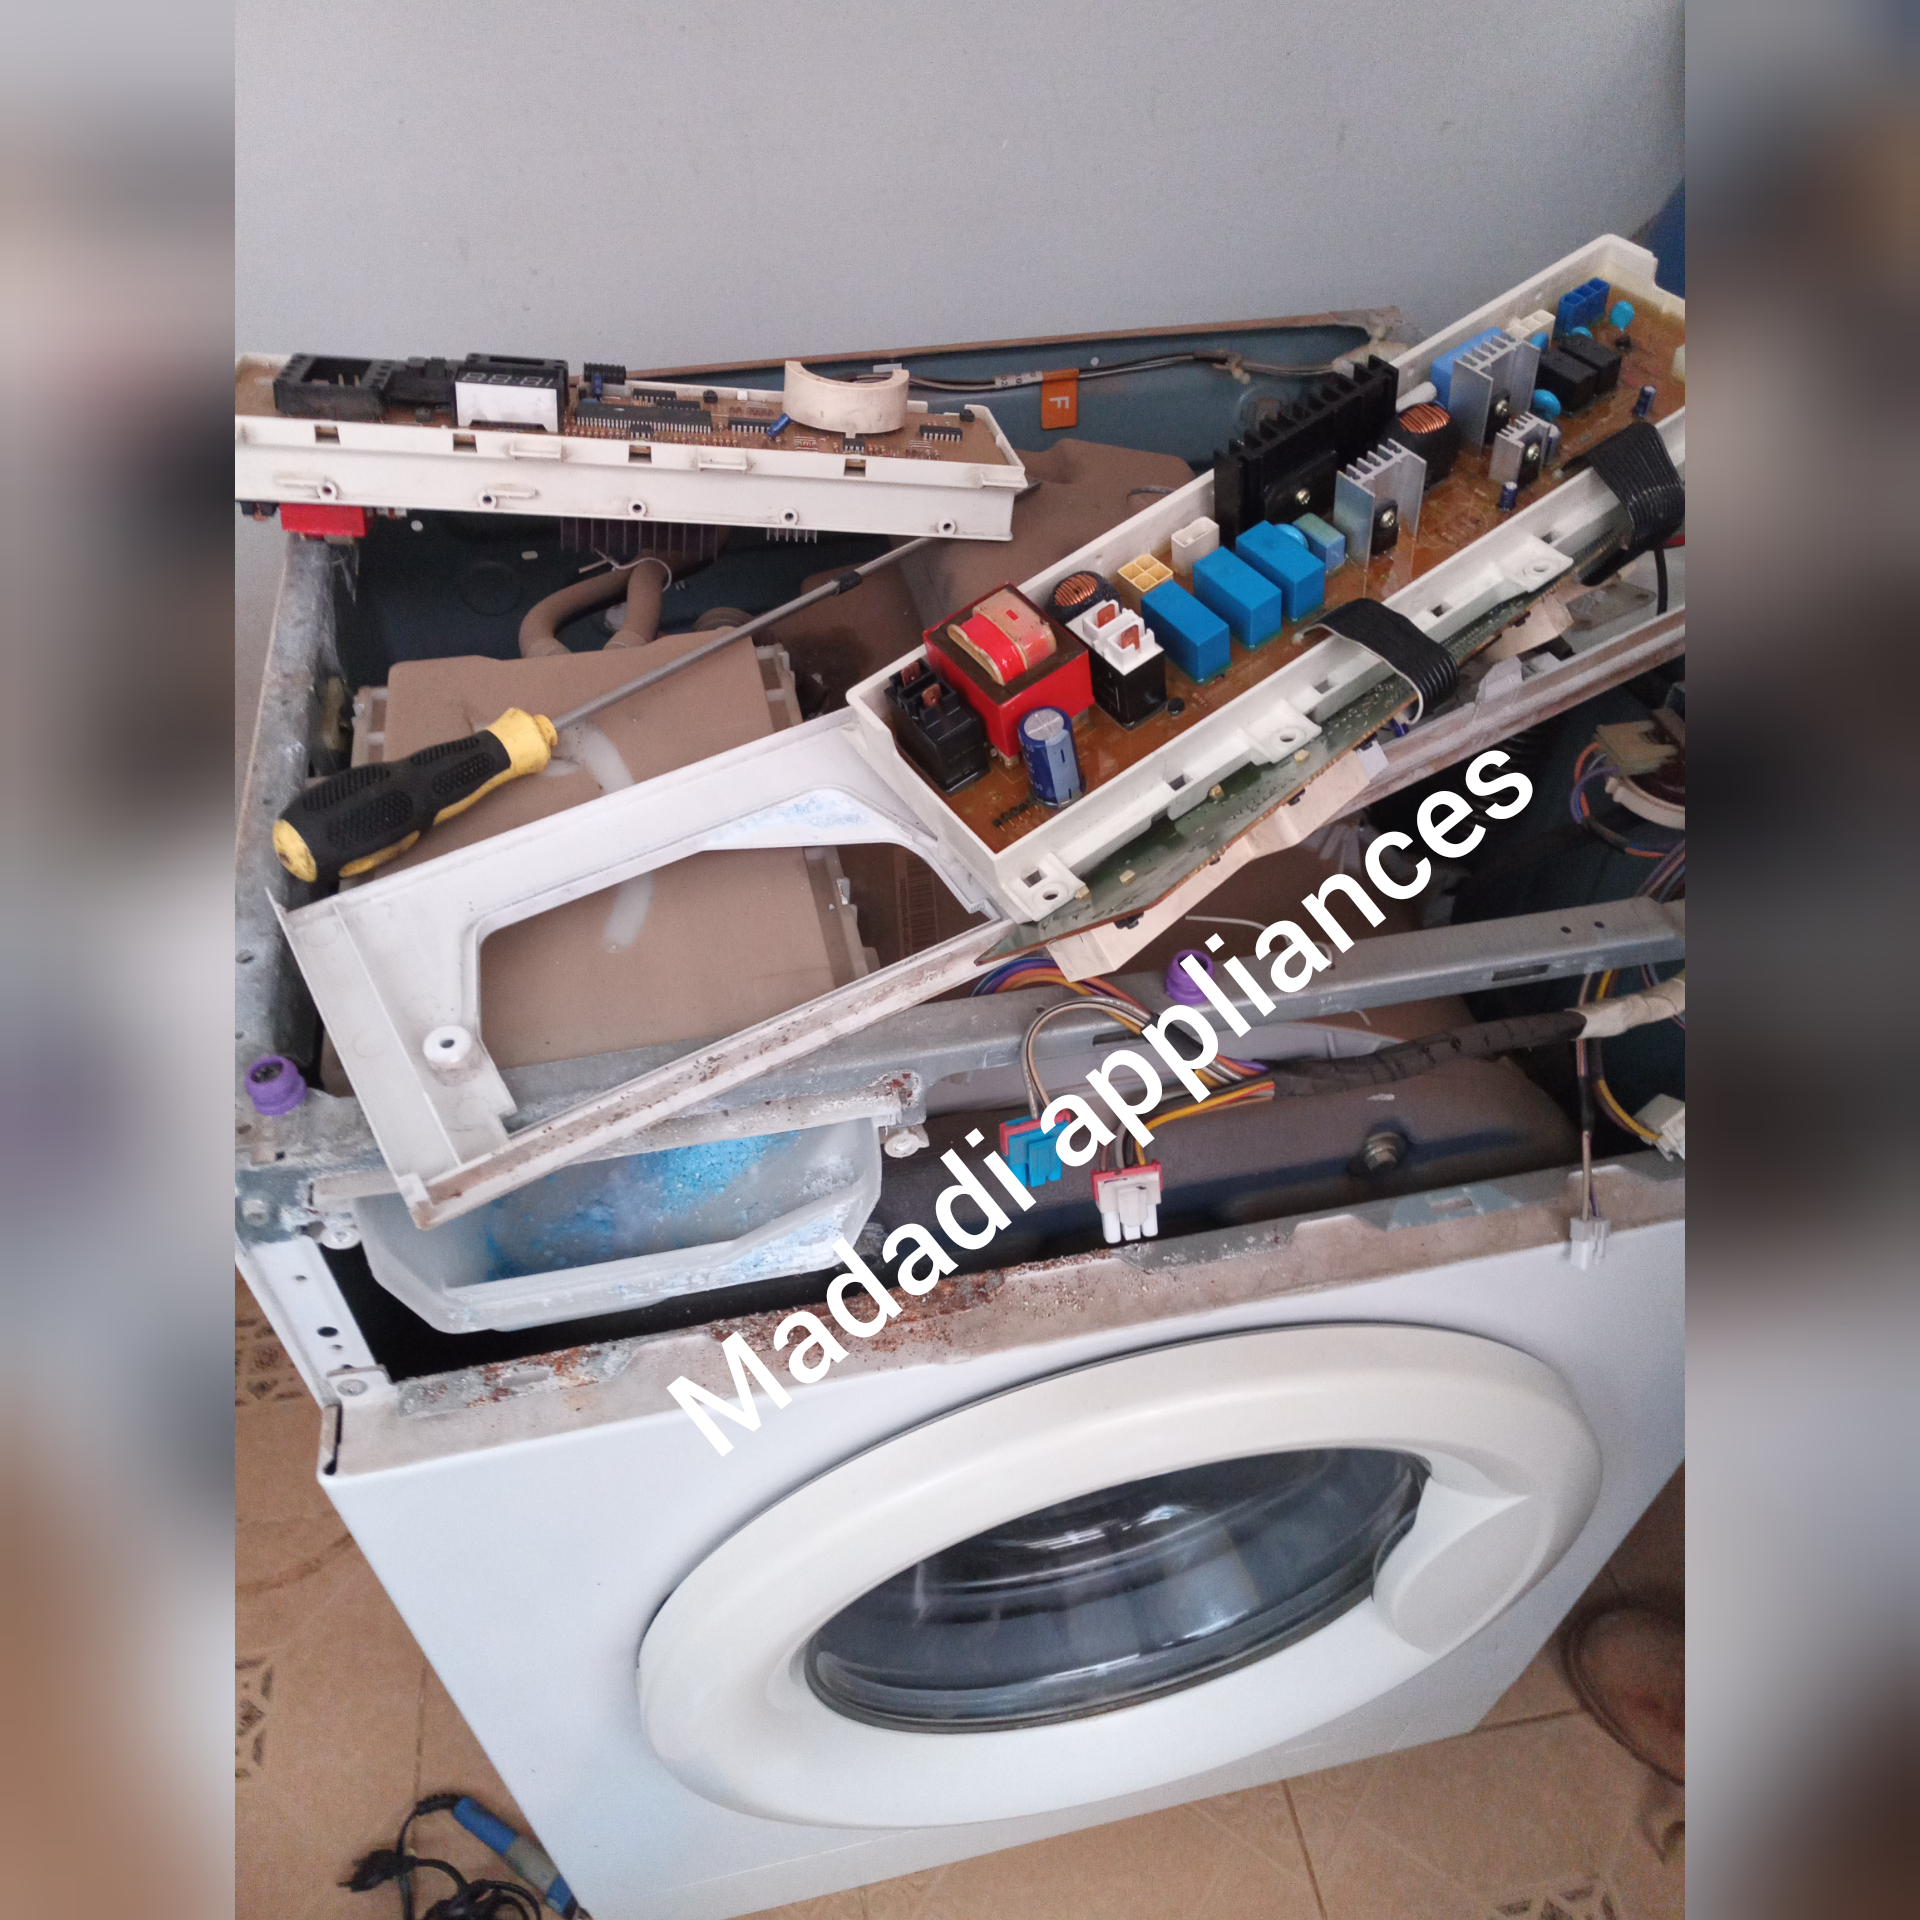 Laundry washing machine maintenance services in Nairobi